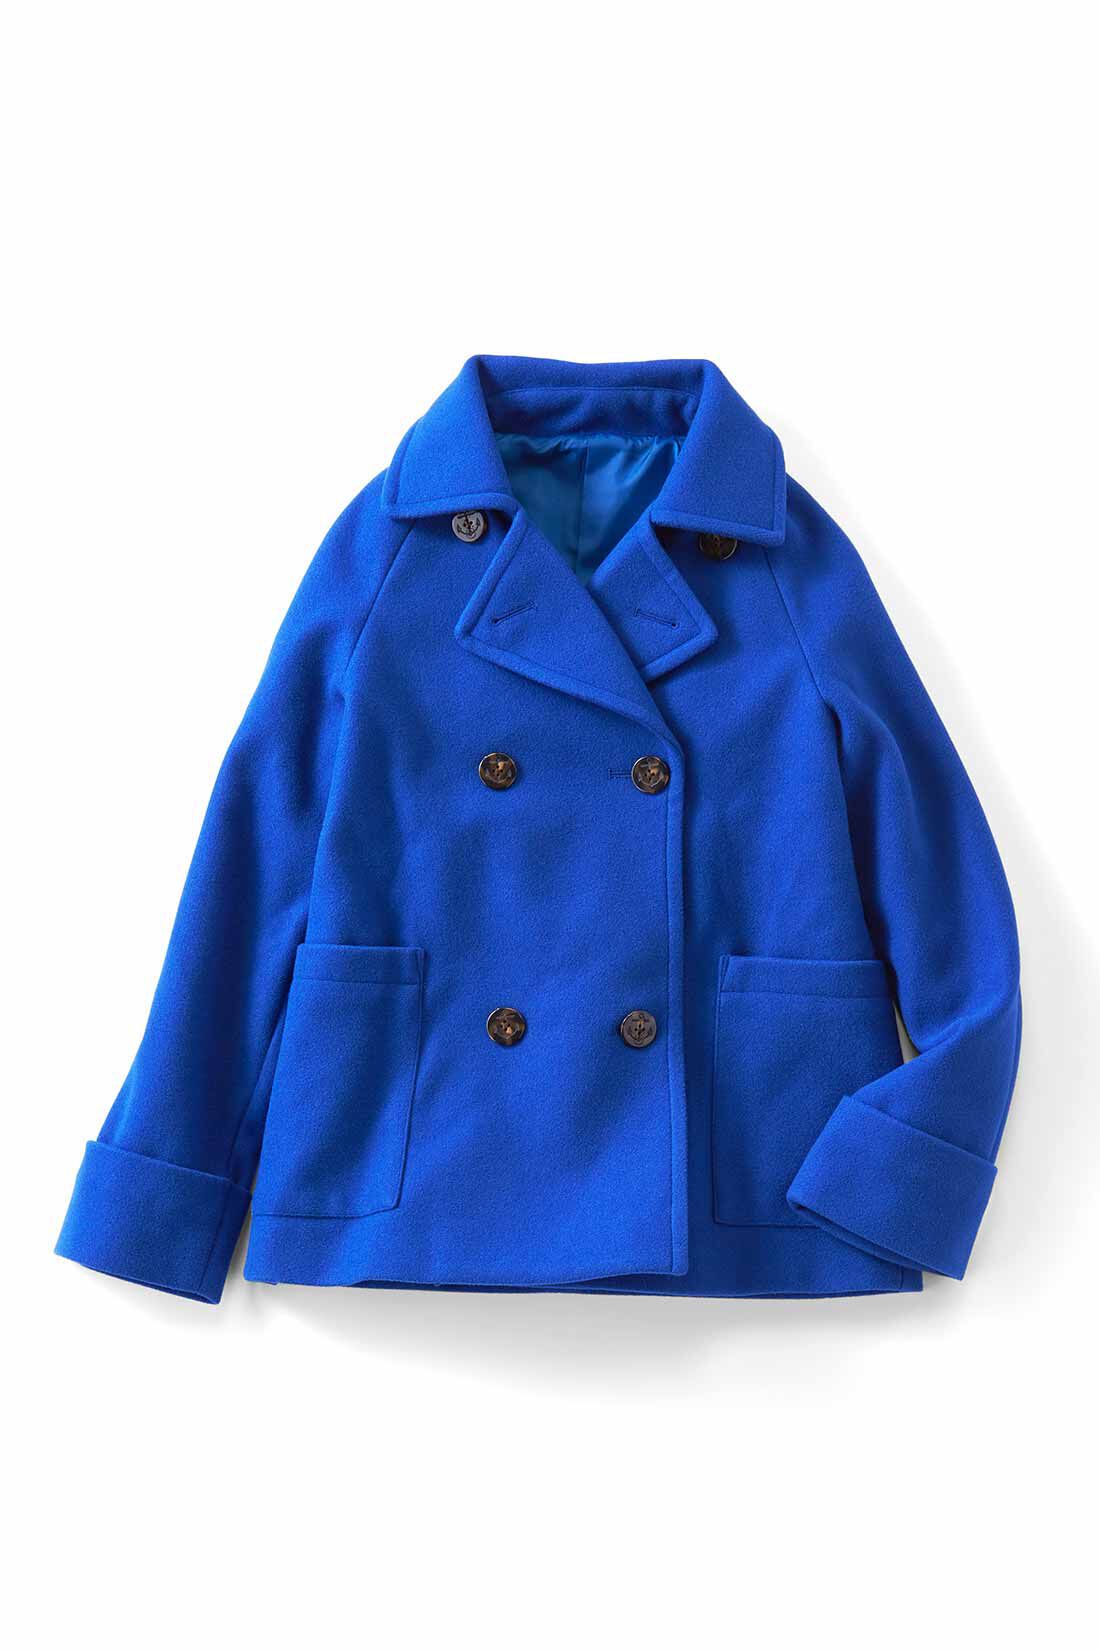 IEDIT[イディット] 着映えカラーのショート丈こなれPコート〈ブルーグリーン〉｜レディースファッション・洋服の通販｜IEDIT